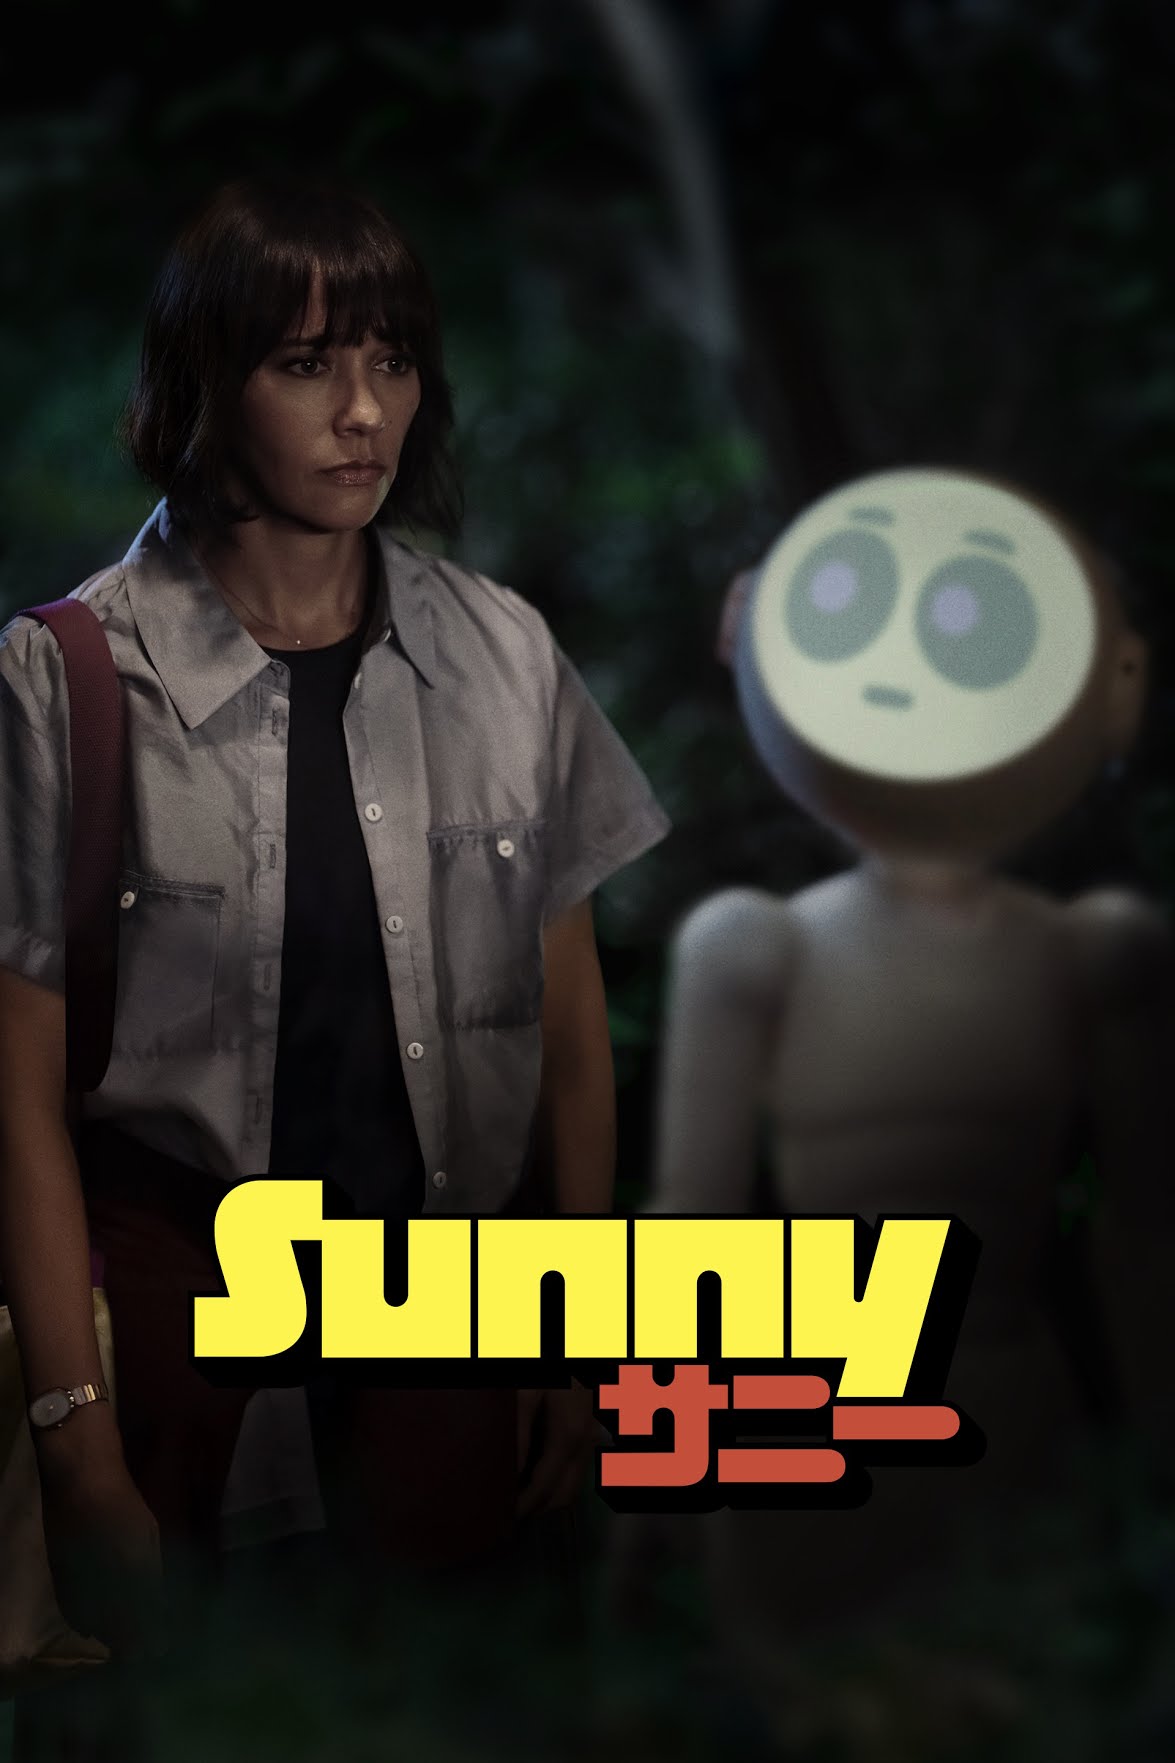 Sunny - Rashida Jones and Sunny the homebot